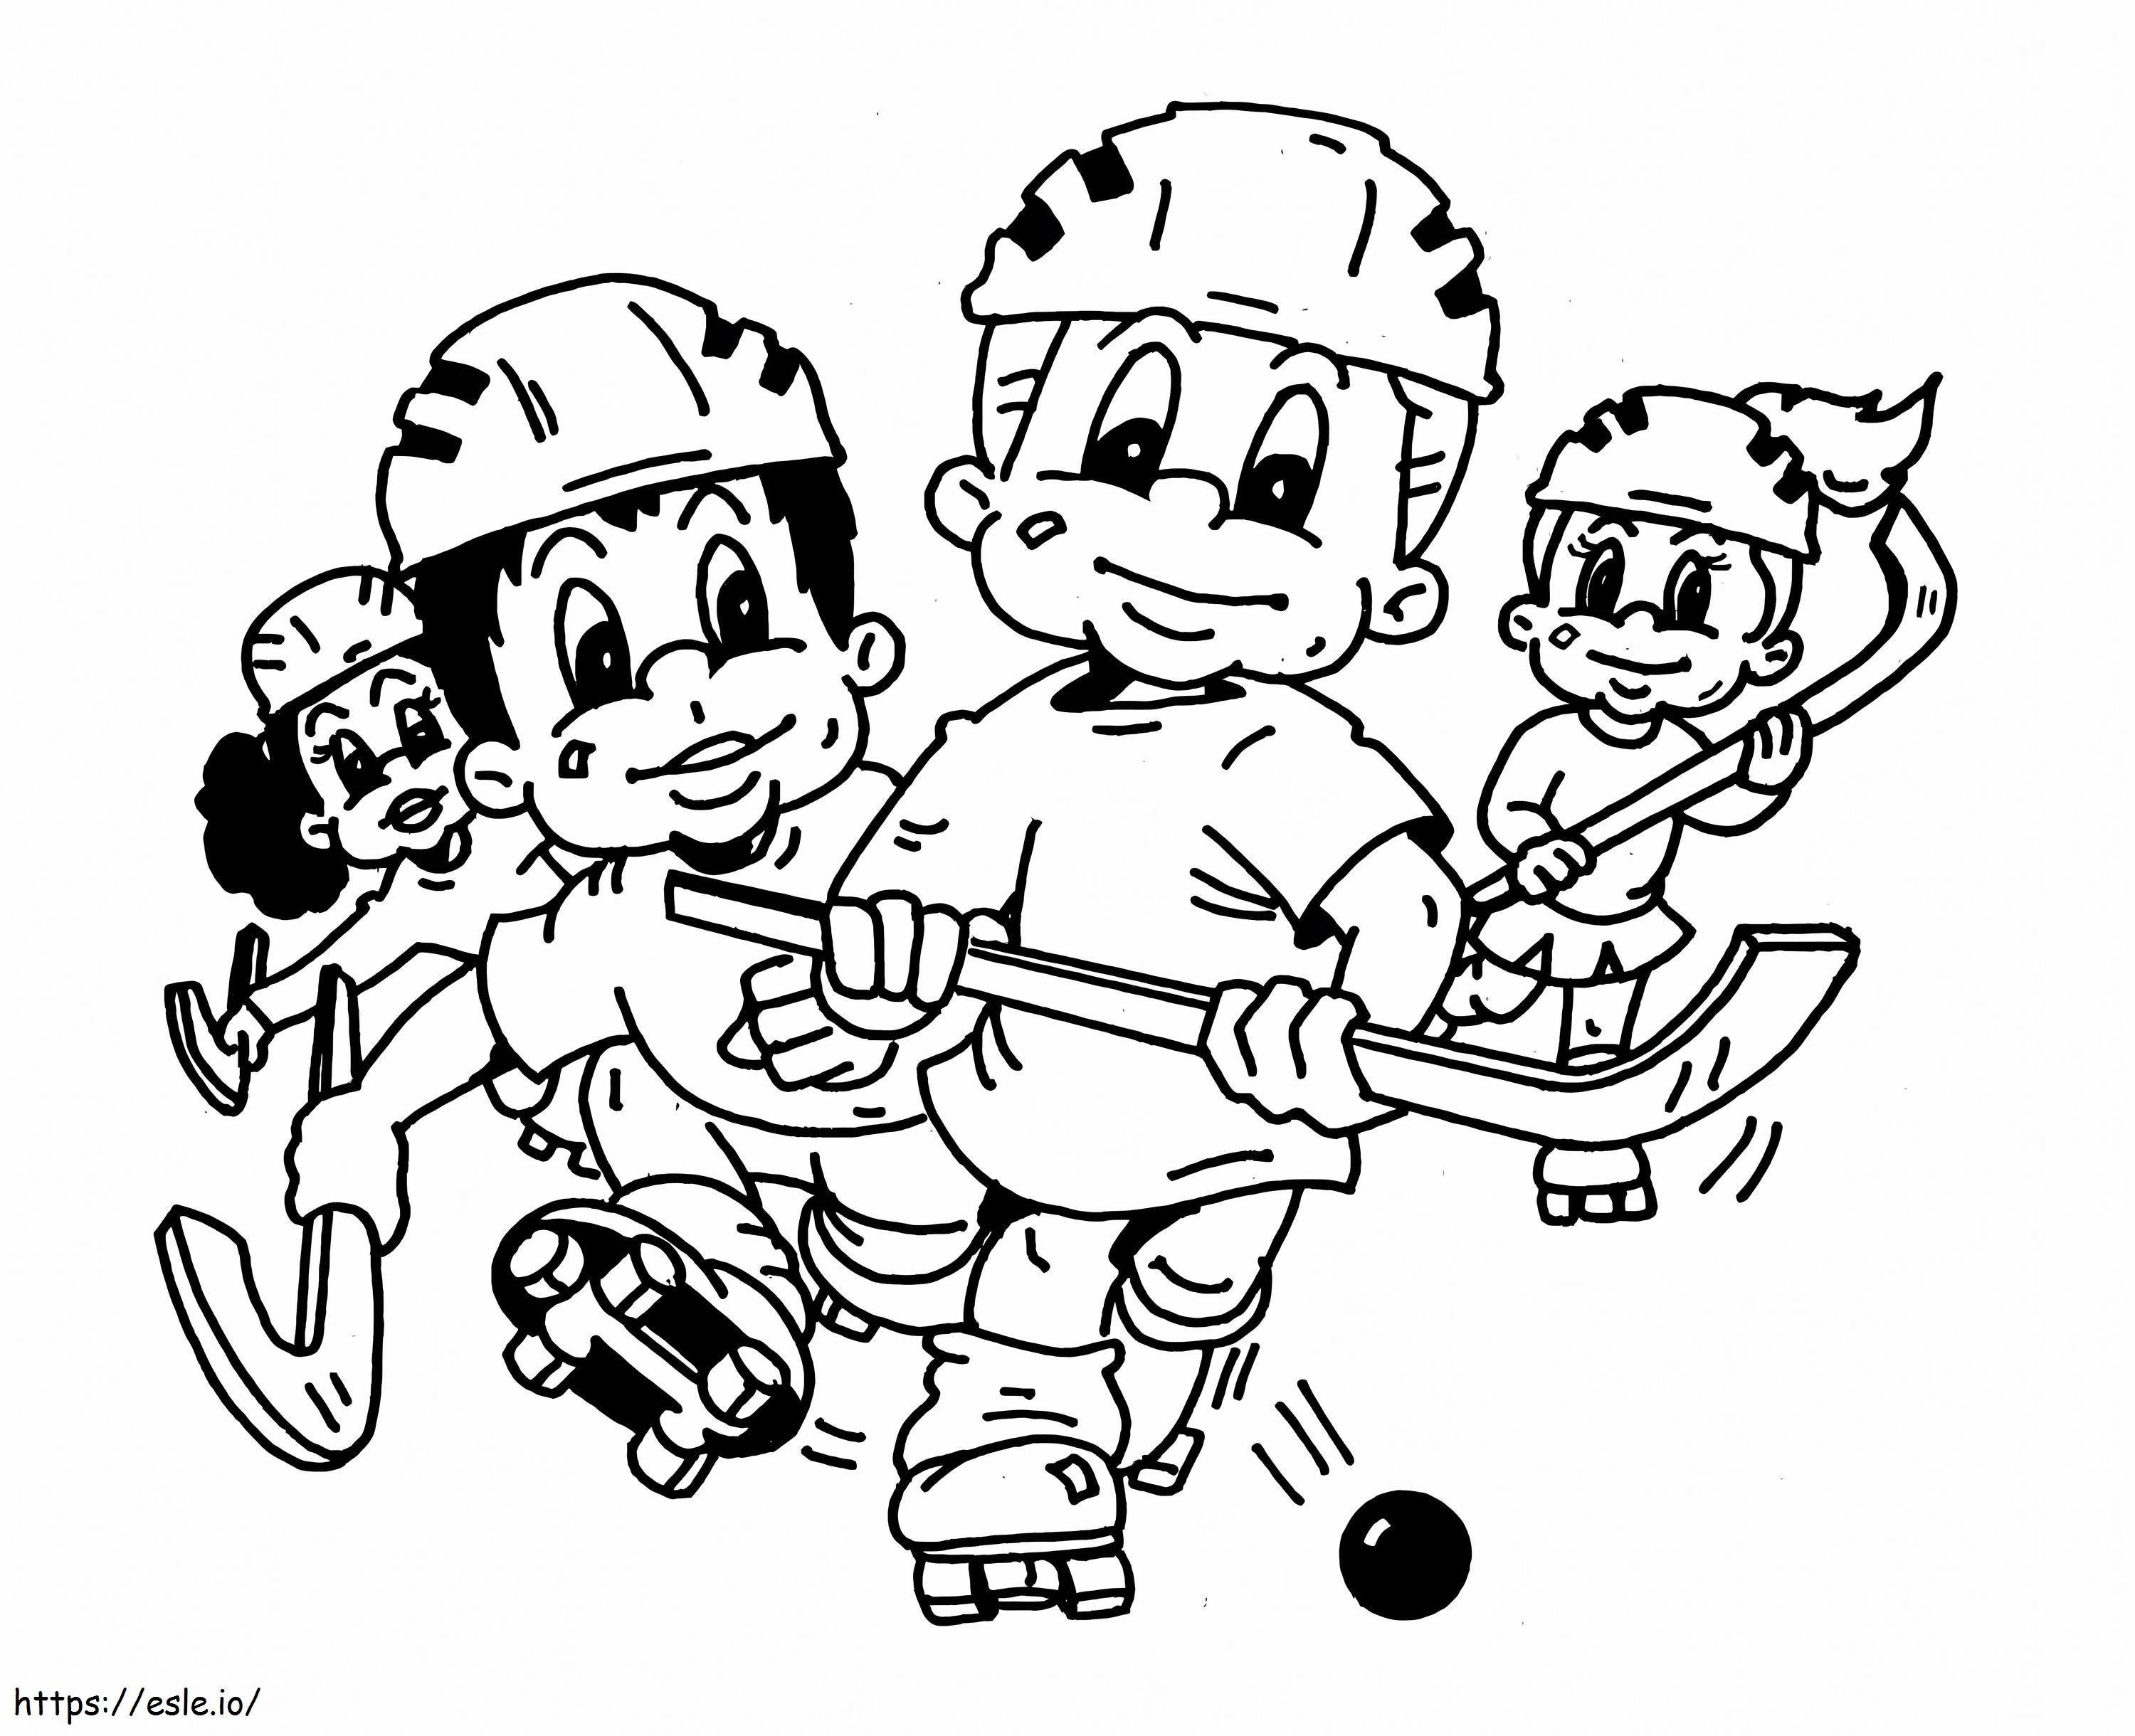 Vier Kinder spielen Hockey ausmalbilder